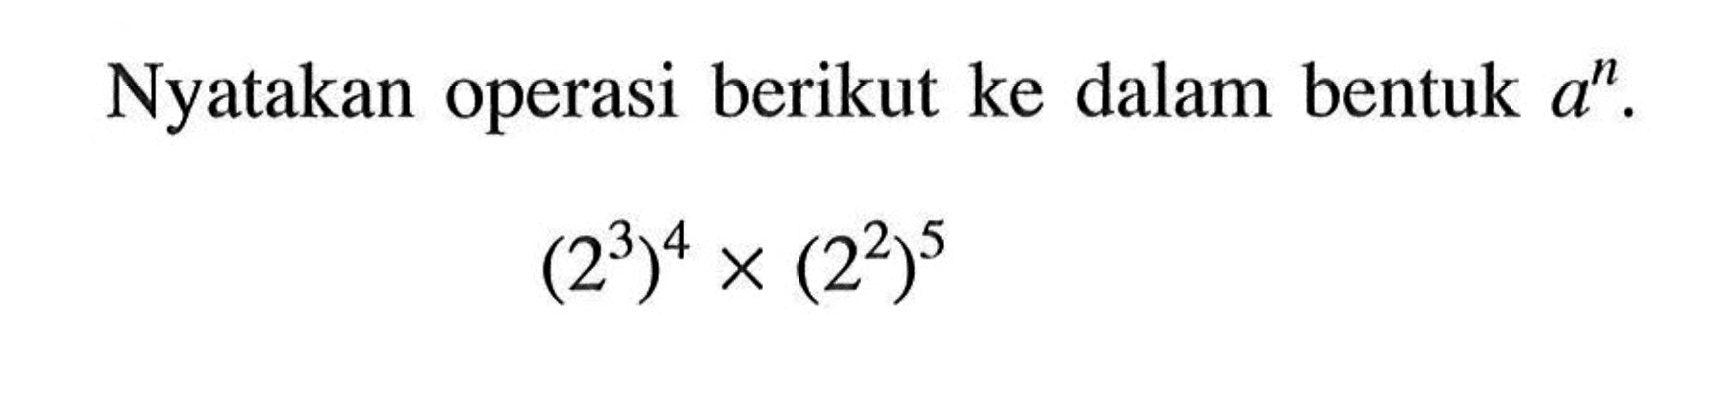 Nyatakan operasi berikut ke dalam bentuk a^n (2^3)^4 x (2^2)^5